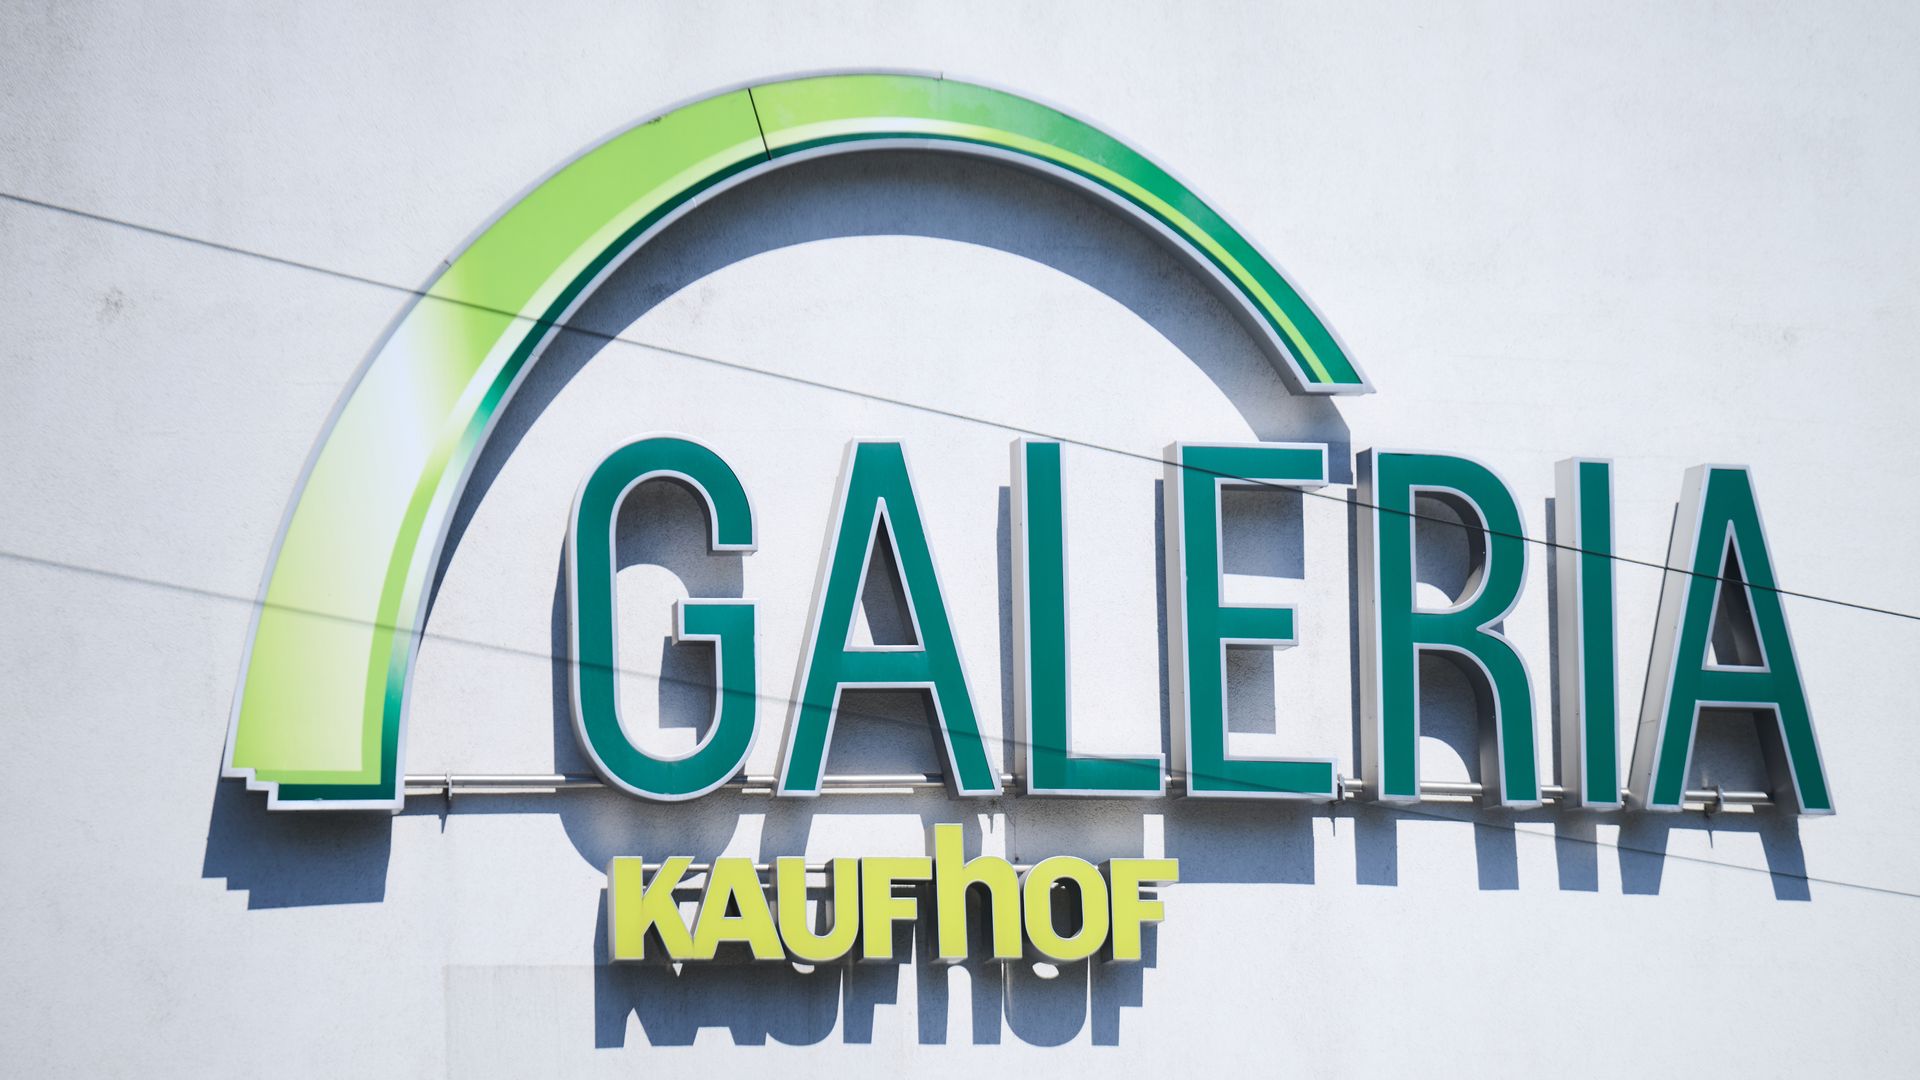 galeria karstadt kaufhof: warenhauskette plant umbenennung nach insolvenzverfahren